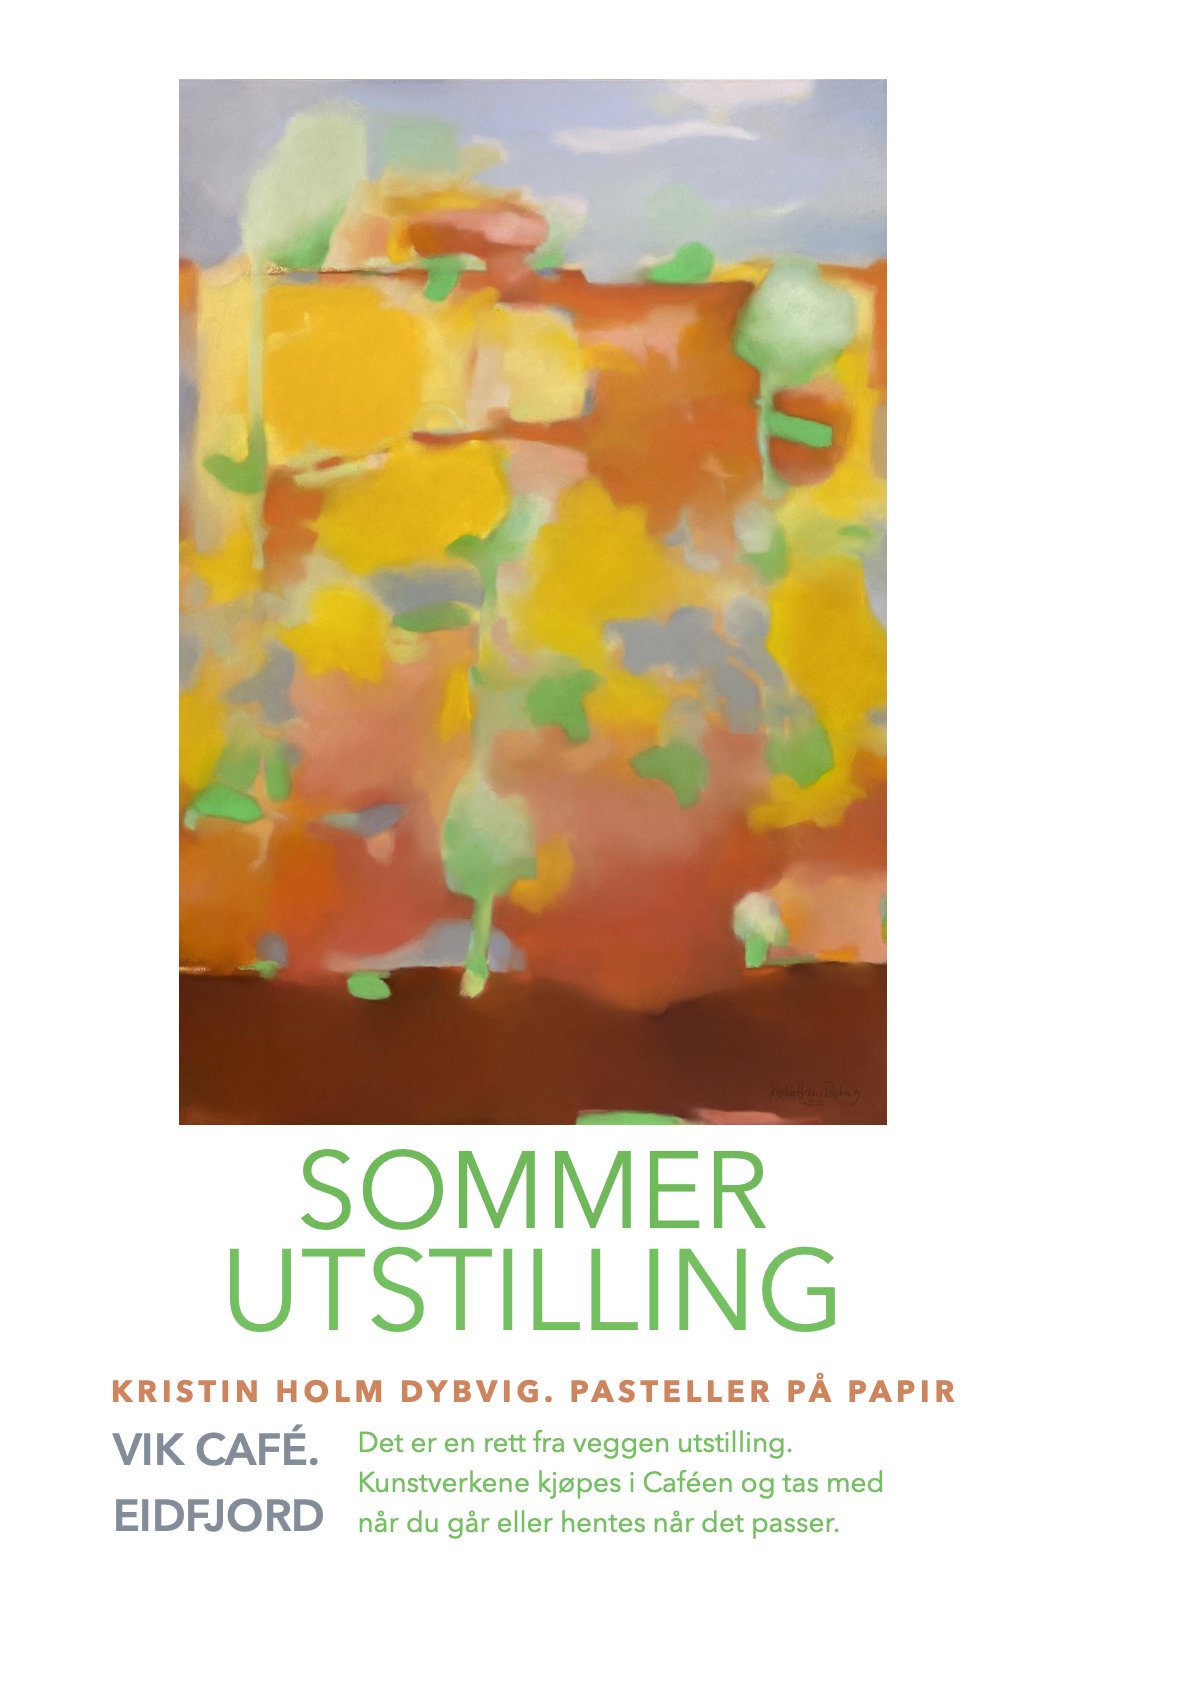 ‎Plakat Sommerutstilling VIK.‎1.jpeg